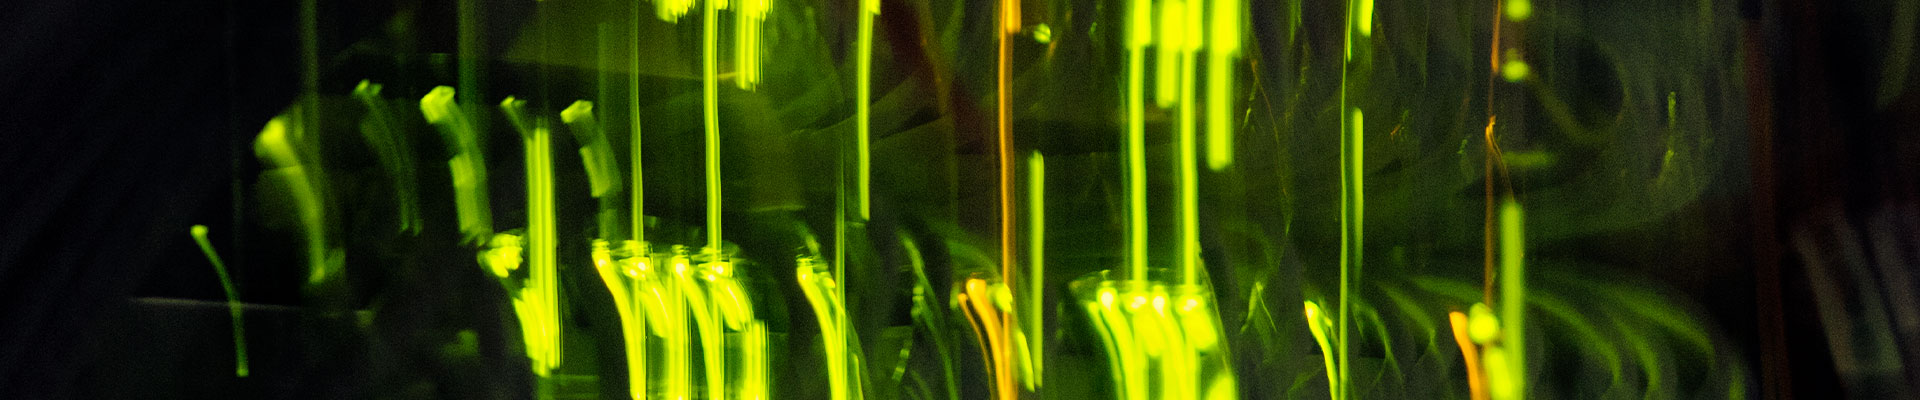 Verschiedene Kabelkanäle, die grün leuchten